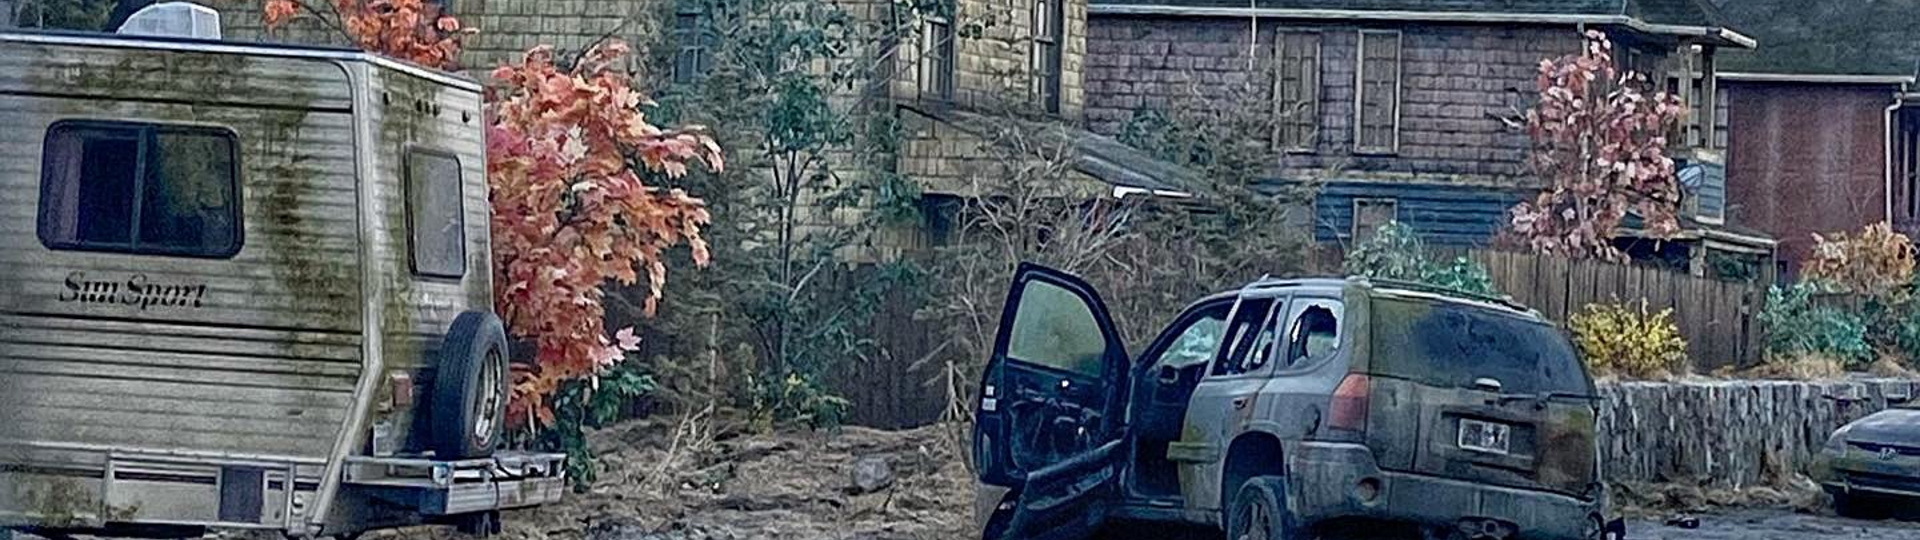 Fotky z natáčení seriálového The Last of Us ukazují slušnou apokalypsu | Novinky